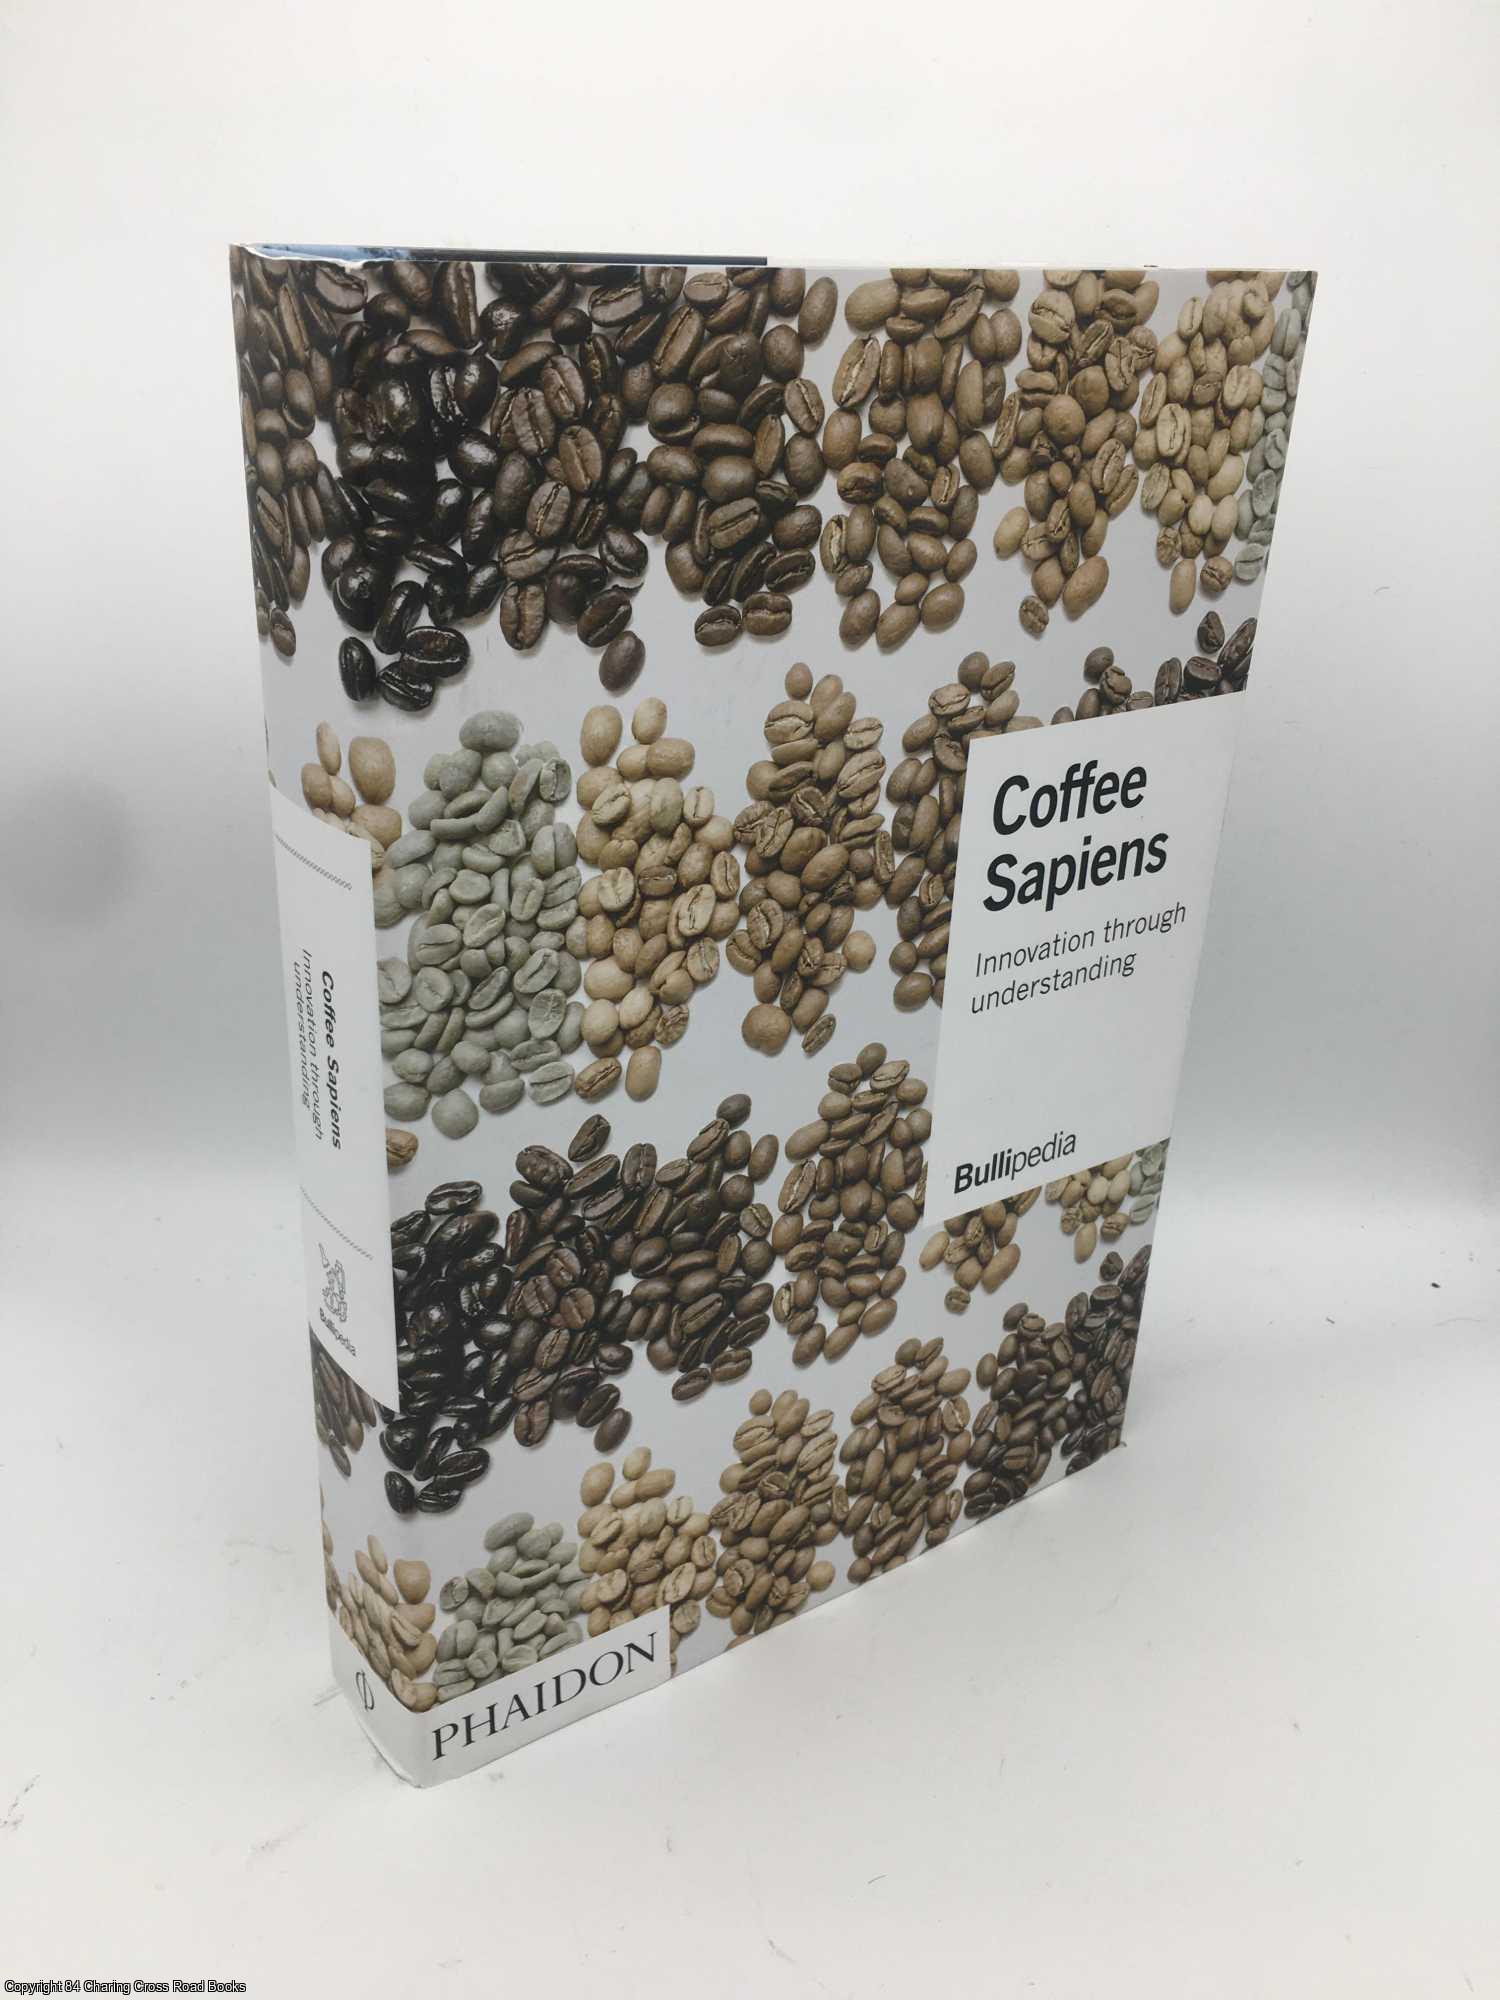 Adri, Ferran - Coffee Sapiens: Innovation through understanding